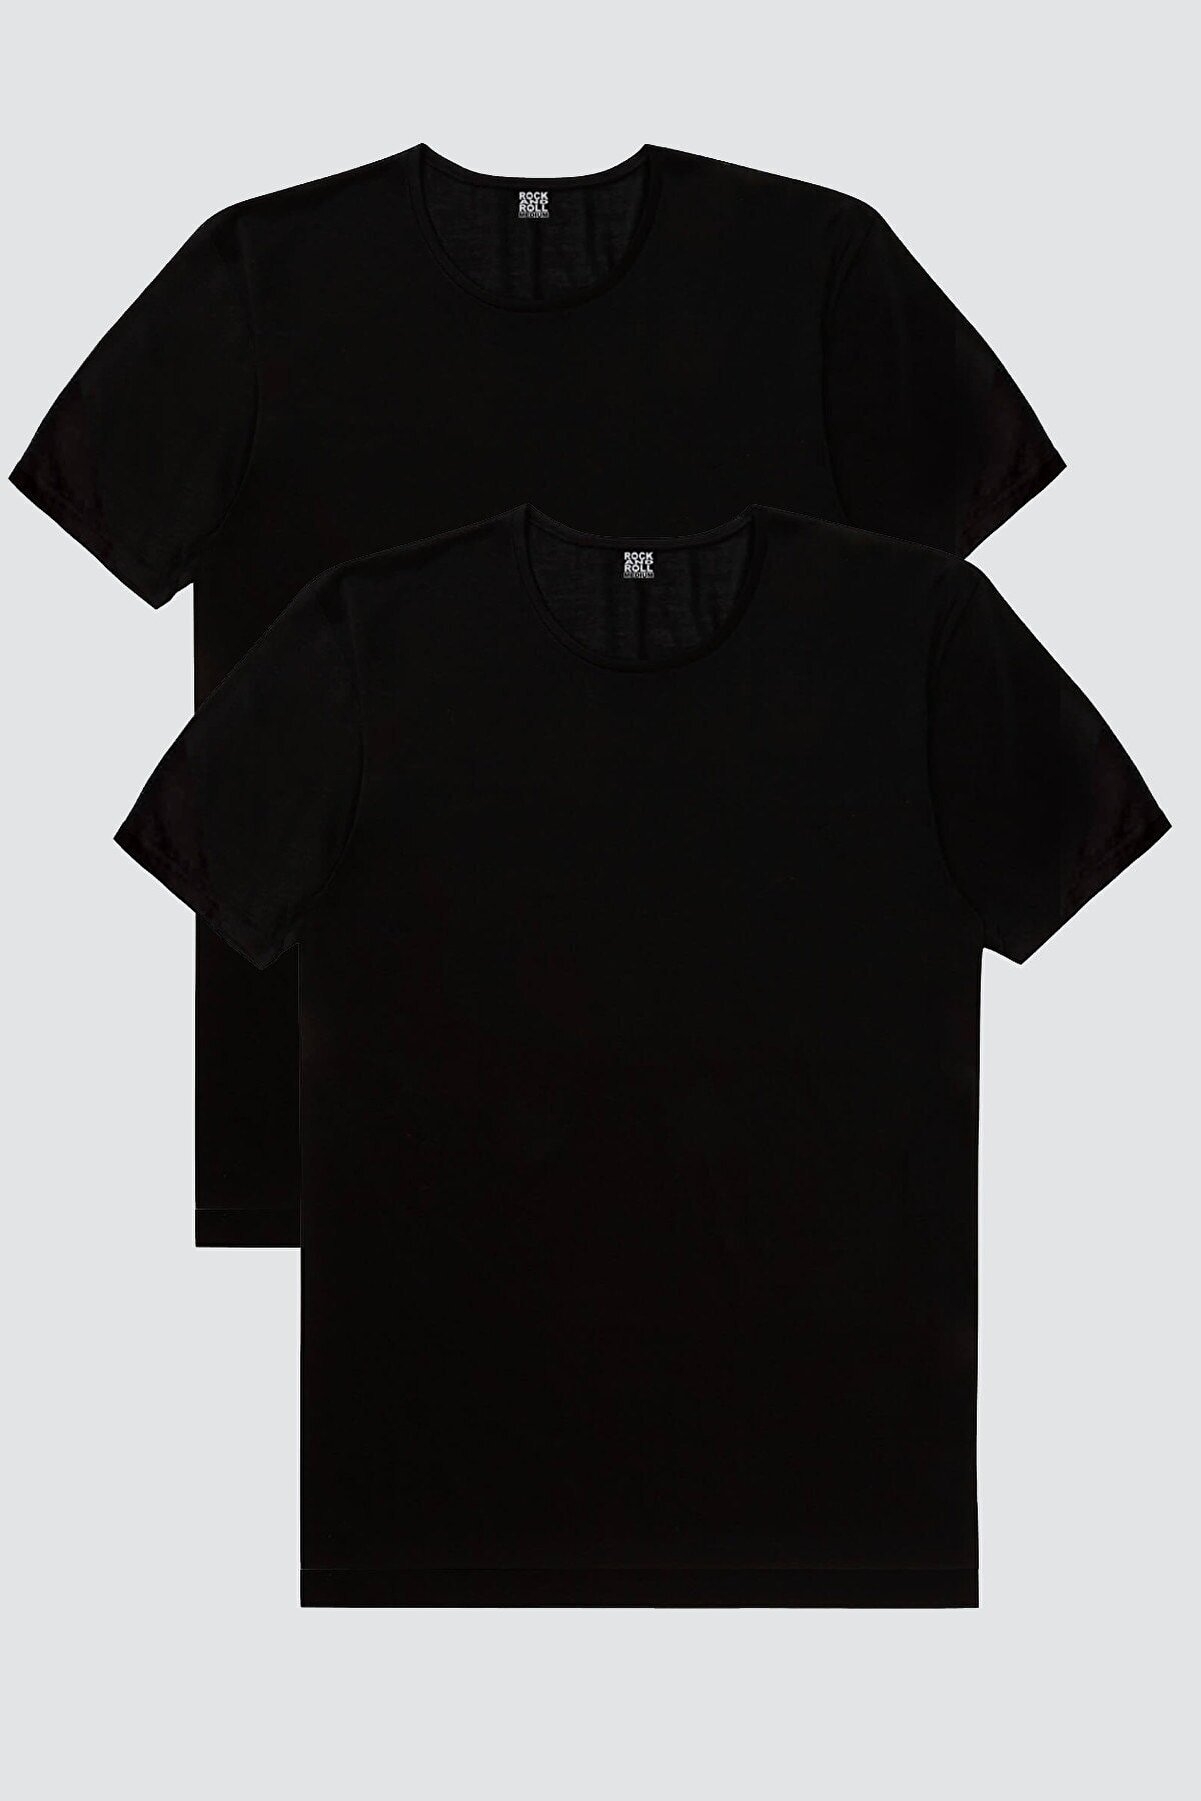 Düz, Baskısız Siyah T-shirt Erkek 2'li Eko Paket